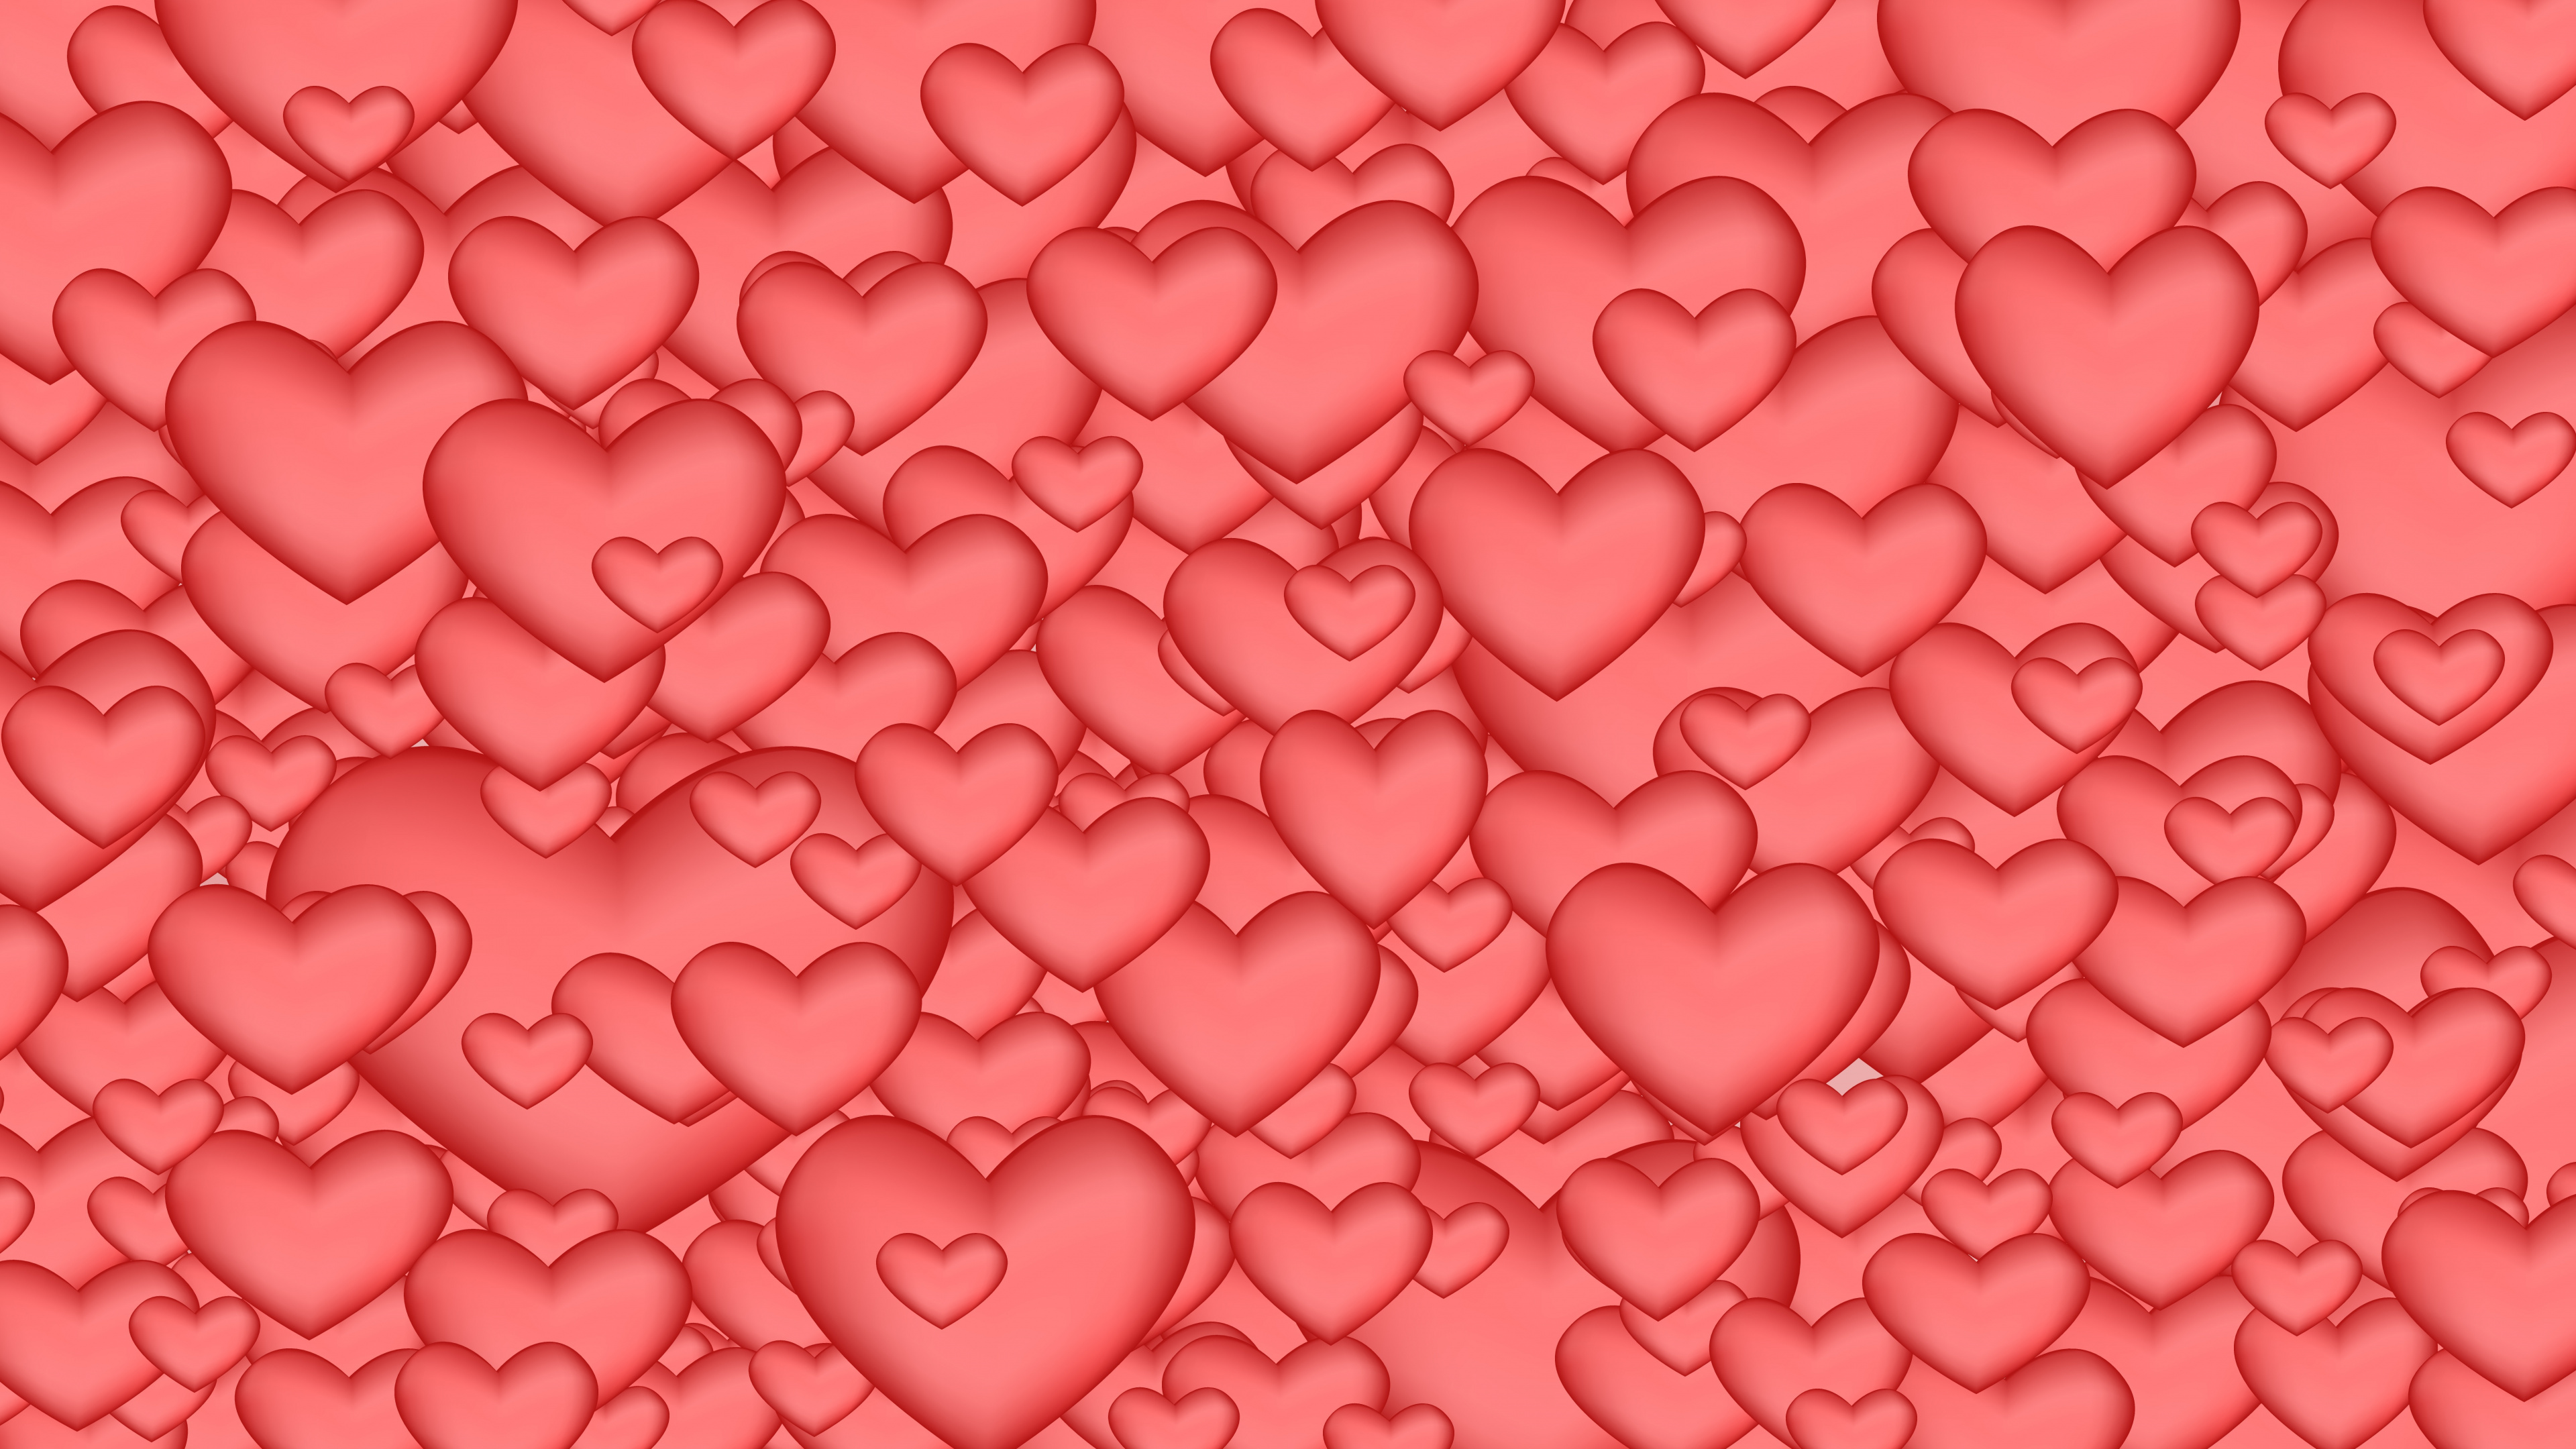 心脏, 粉红色, 红色的, 爱情, 浪漫 壁纸 3840x2160 允许